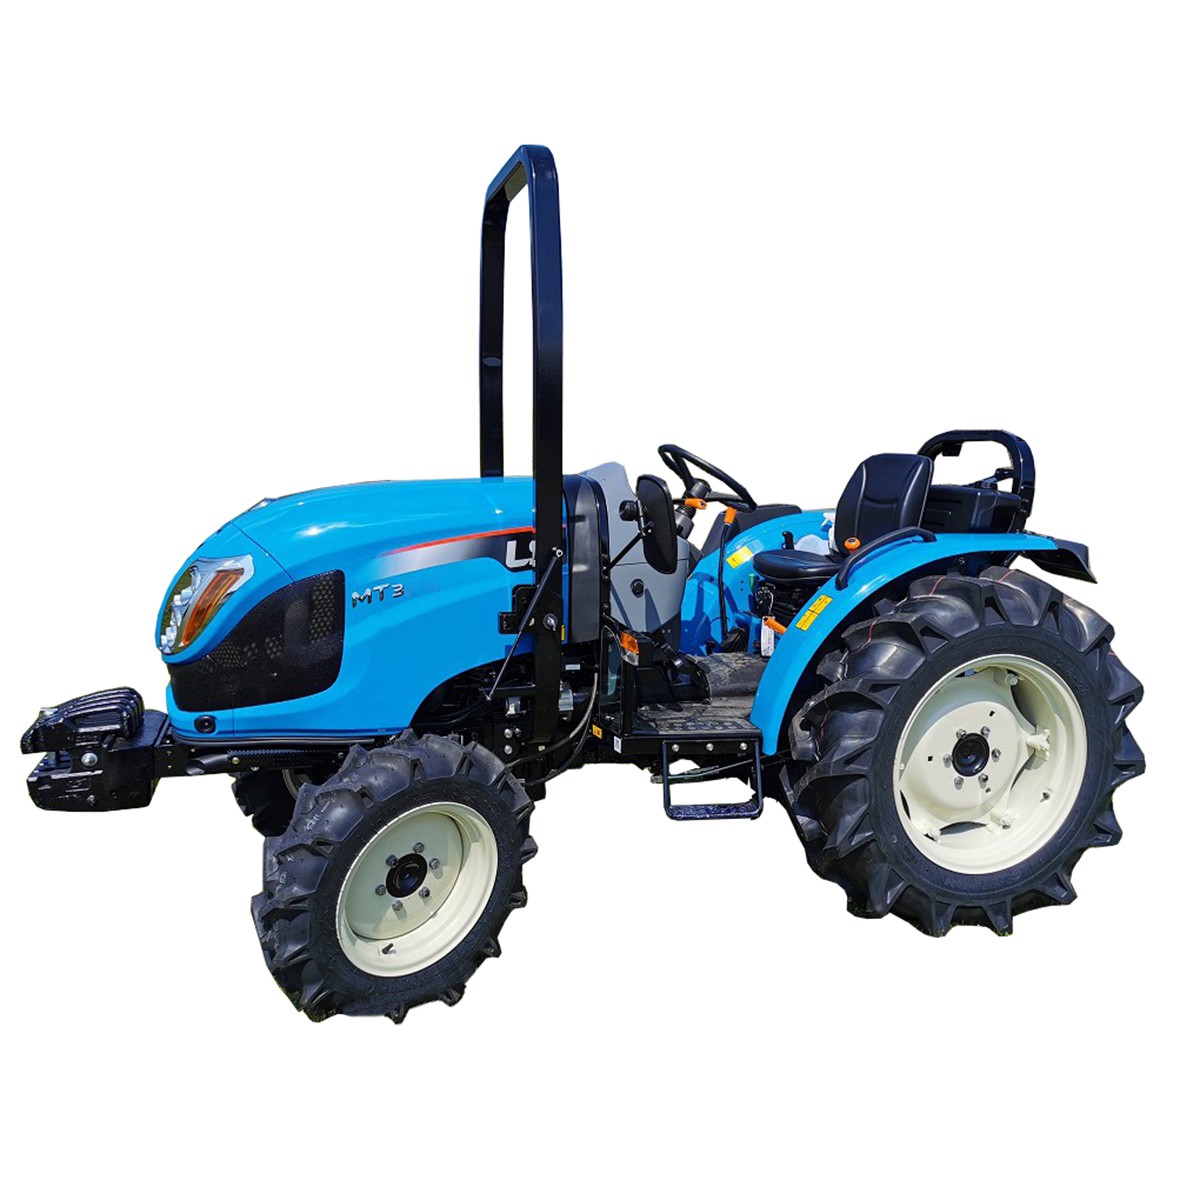 LS Traktor MT3.60 MEC 4x4 - 57 HP